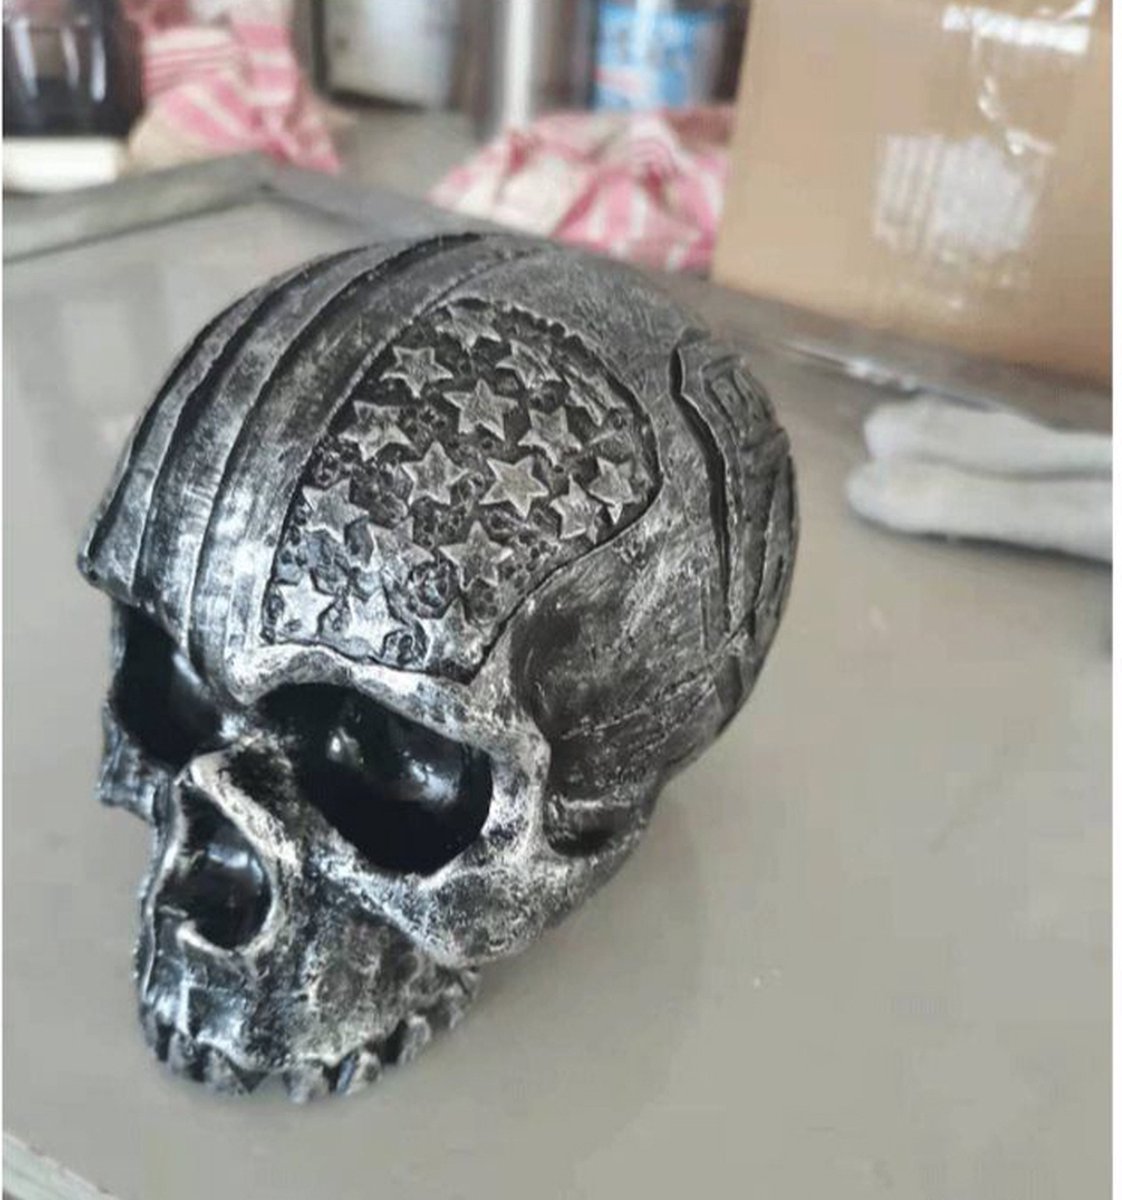 Porte-Casques tête de Mort,Support Mural pour Casque de Moto Skull